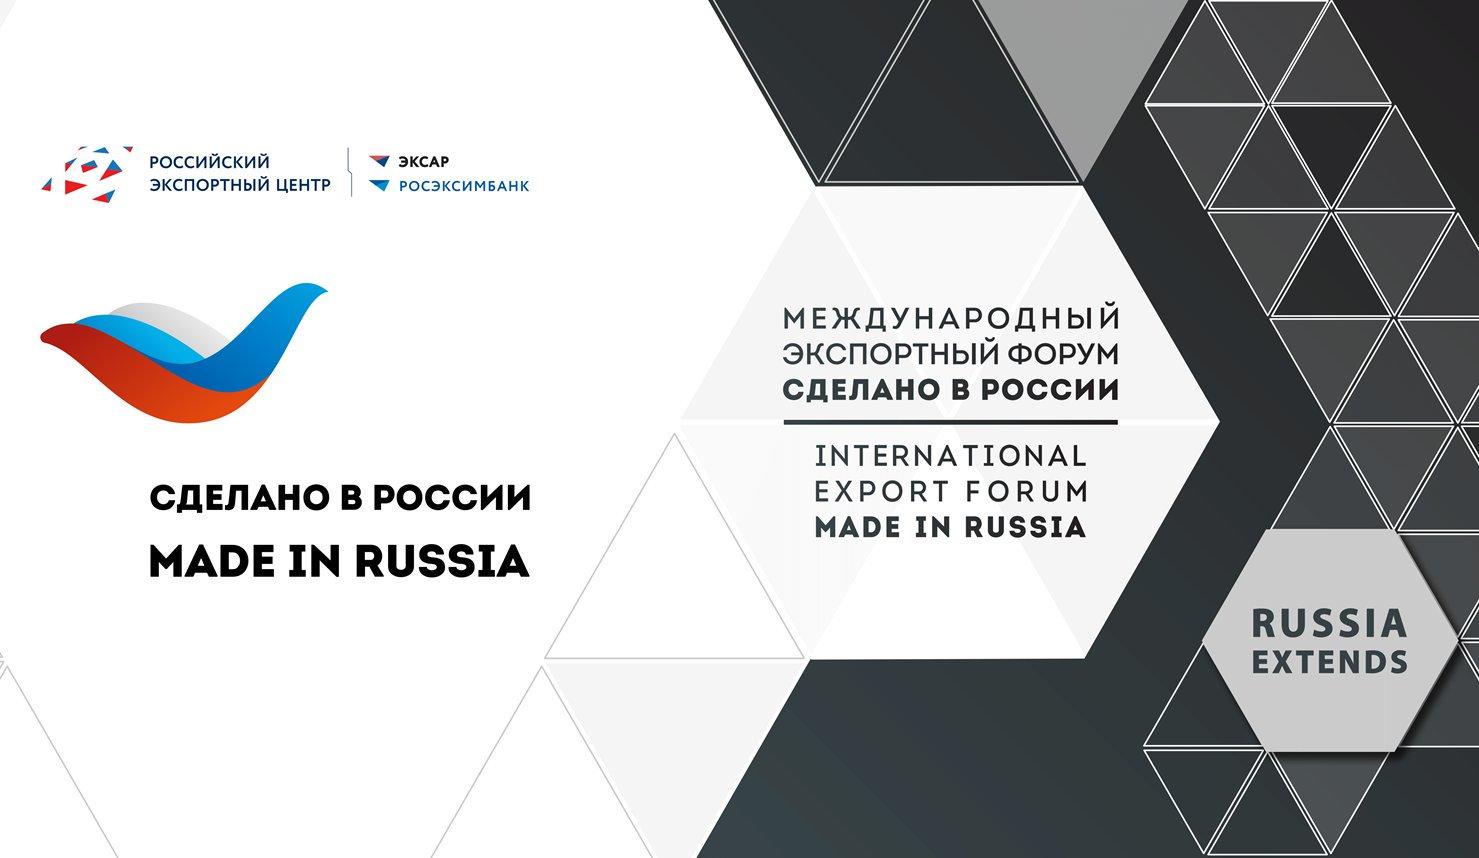 Открыта регистрация на главный экспортный форум страны «Сделано в России»